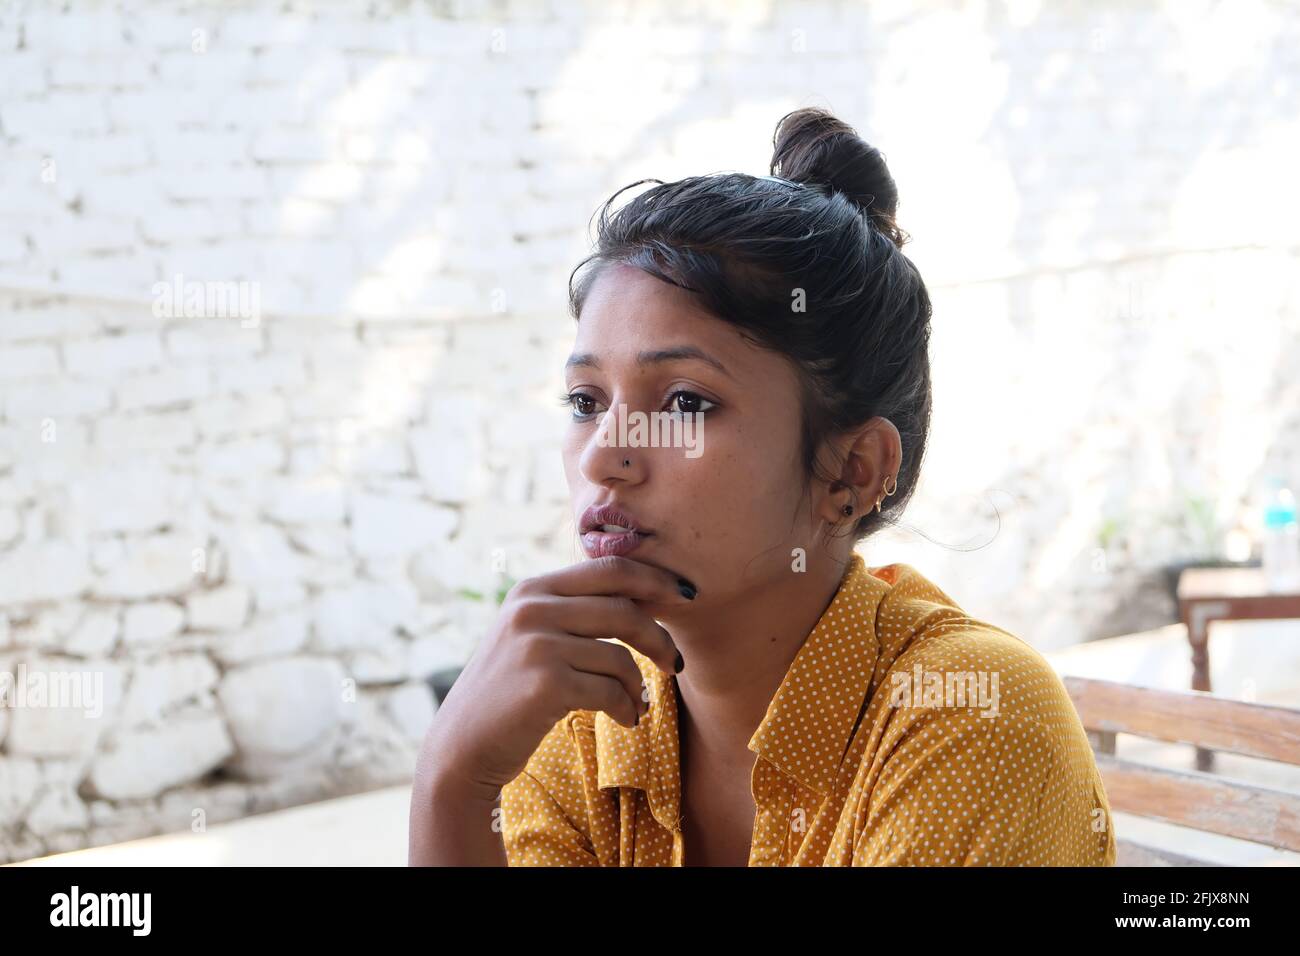 Gros plan d'une femme d'Asie du Sud avec un sérieux expression Banque D'Images